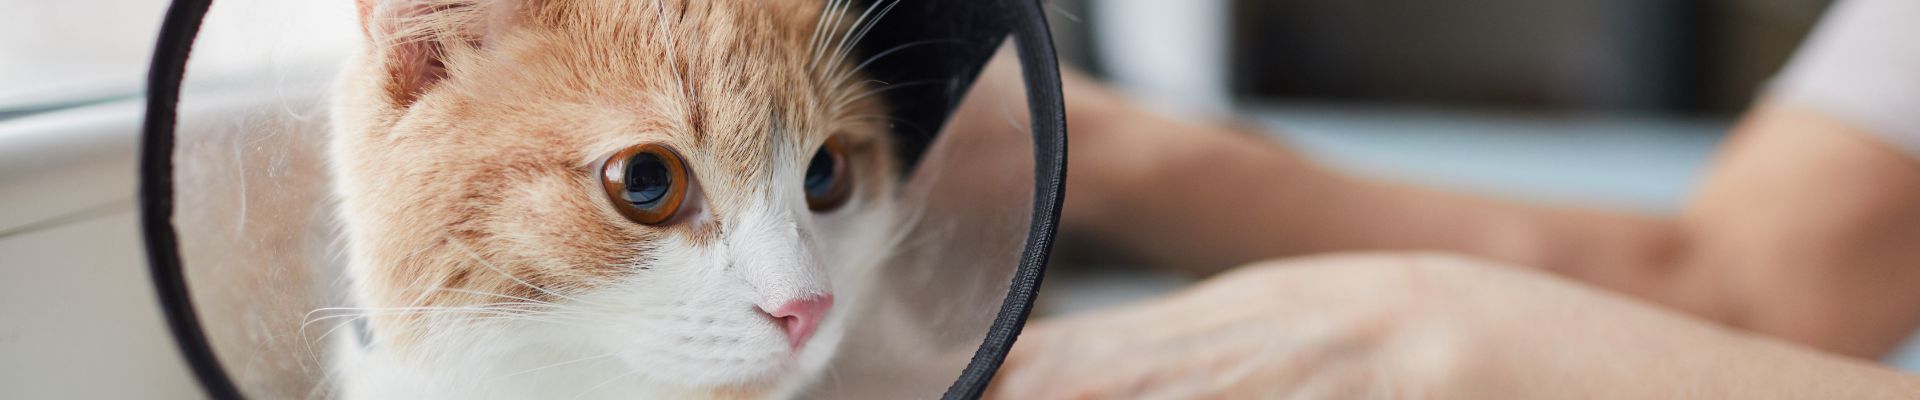 orange kitten wearing cone collar